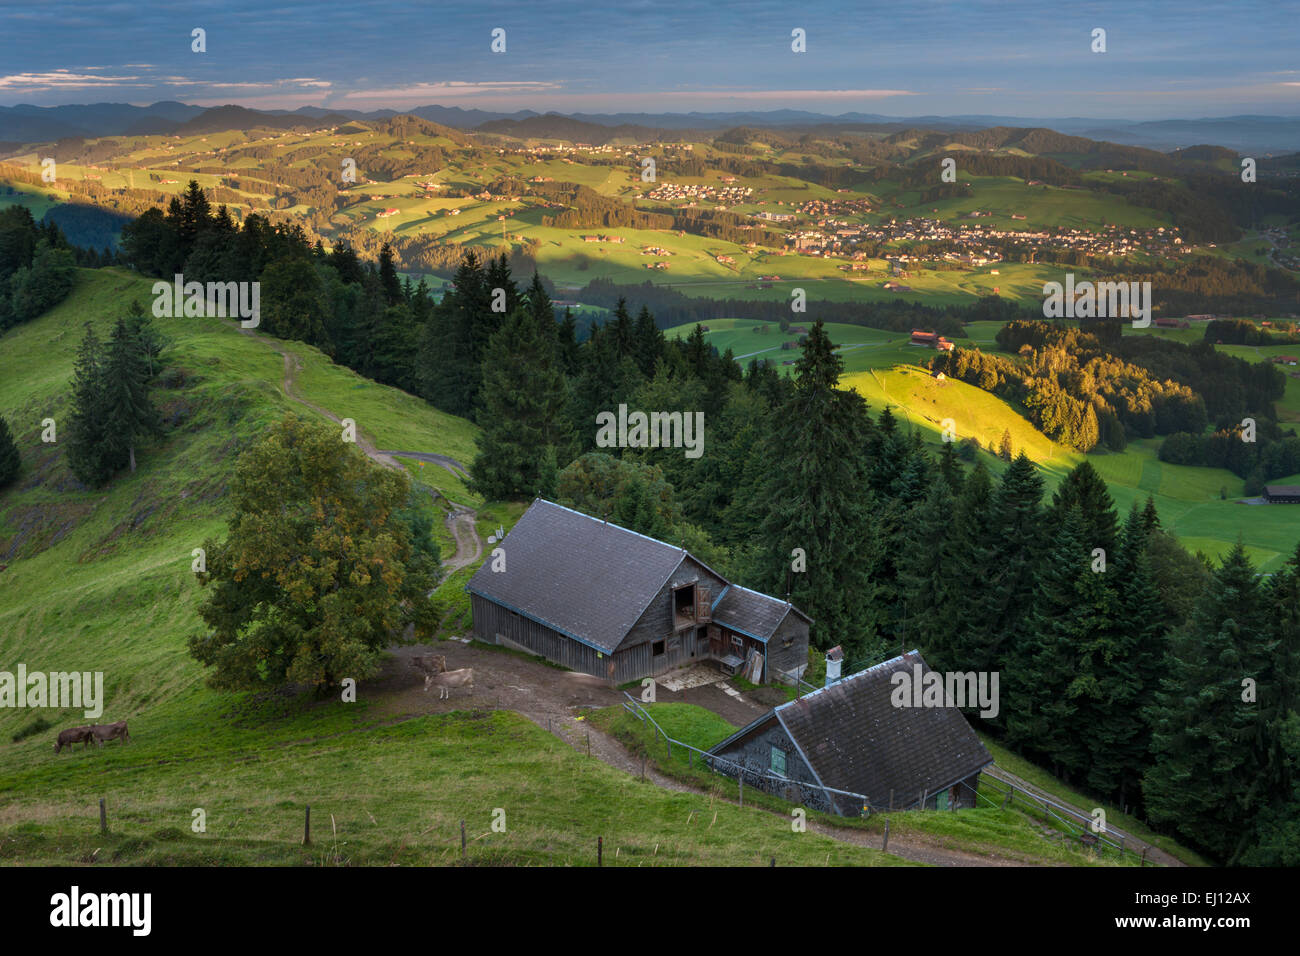 Vista, Hundwiler Höhe, altezza Hundwil, Svizzera, Europa, del cantone di Appenzell Ausserrhoden, legno, foresta, abeti rossi, Alp, mattina l Foto Stock